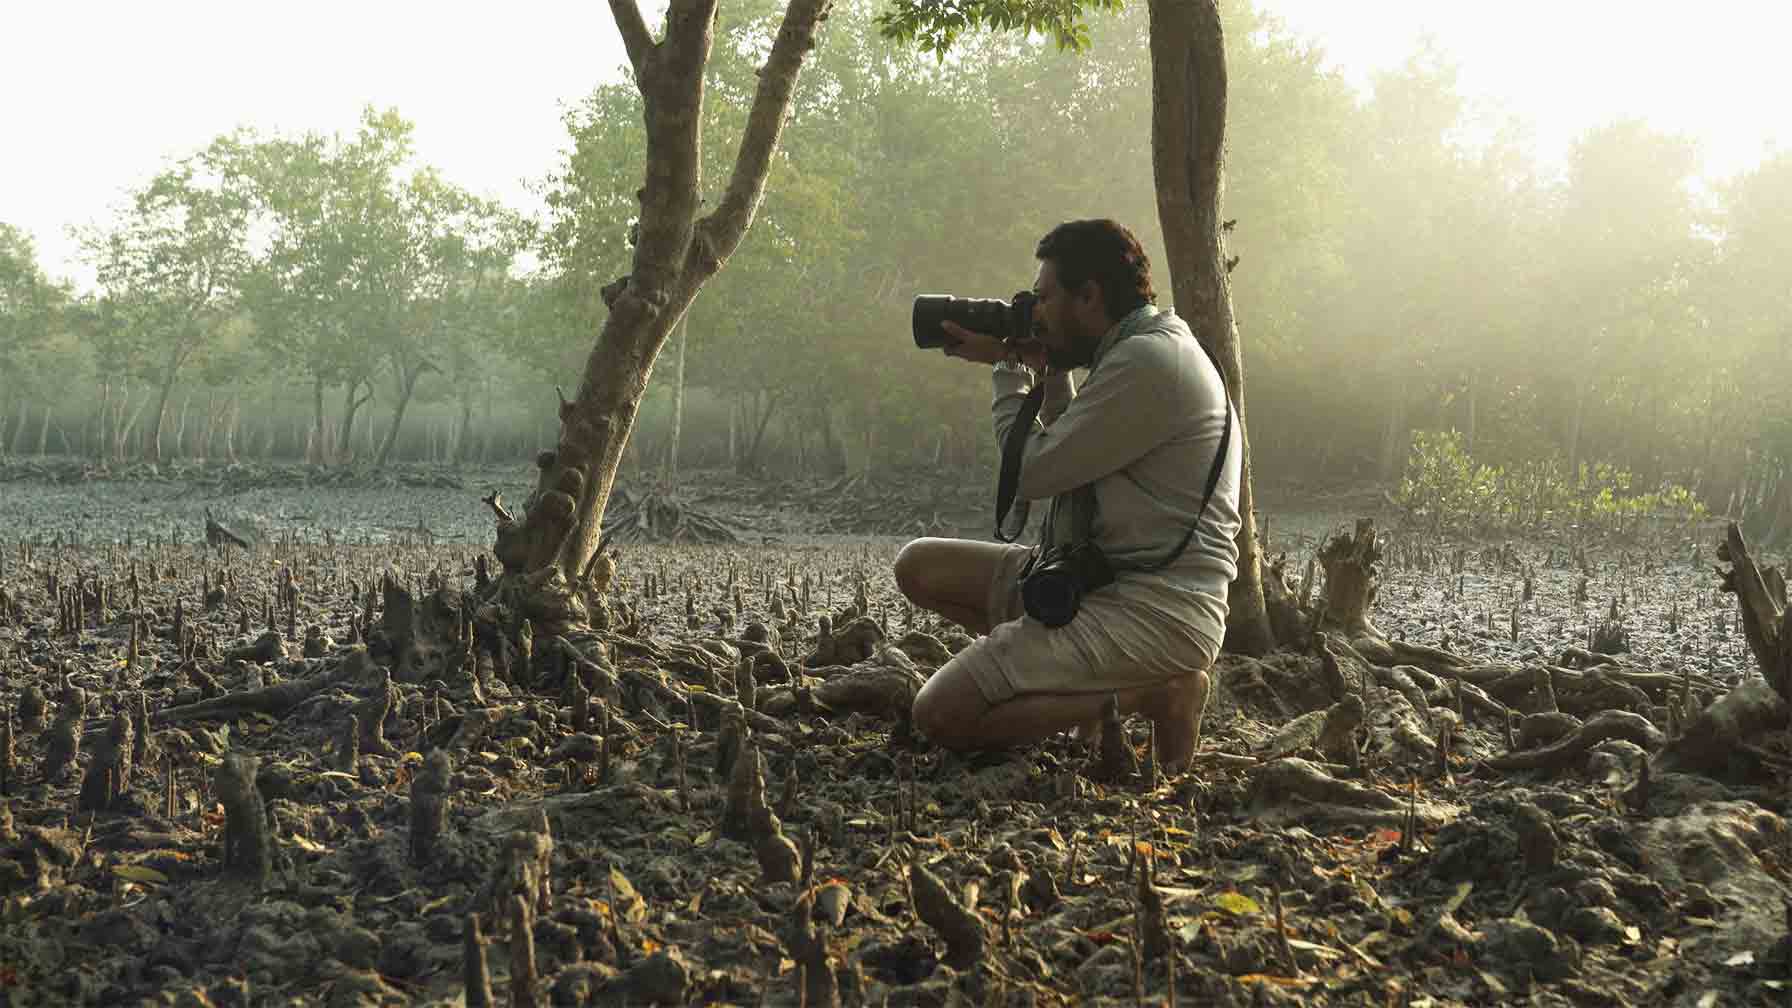 Unterwegs mit unserem Fotografen in den Sundarbans: Der größte Mangrovenwald der Erde ist ein kostbares Ökosystem. Für dessen Schutz und nachhaltige Nutzung setzt sich die GIZ im Auftrag der Bundesregierung seit 2015 ein. Sie trägt damit zum Erreichen des Nachhaltigkeitsziels 15 der Vereinten Nationen bei. © Tapash Paul/GIZ